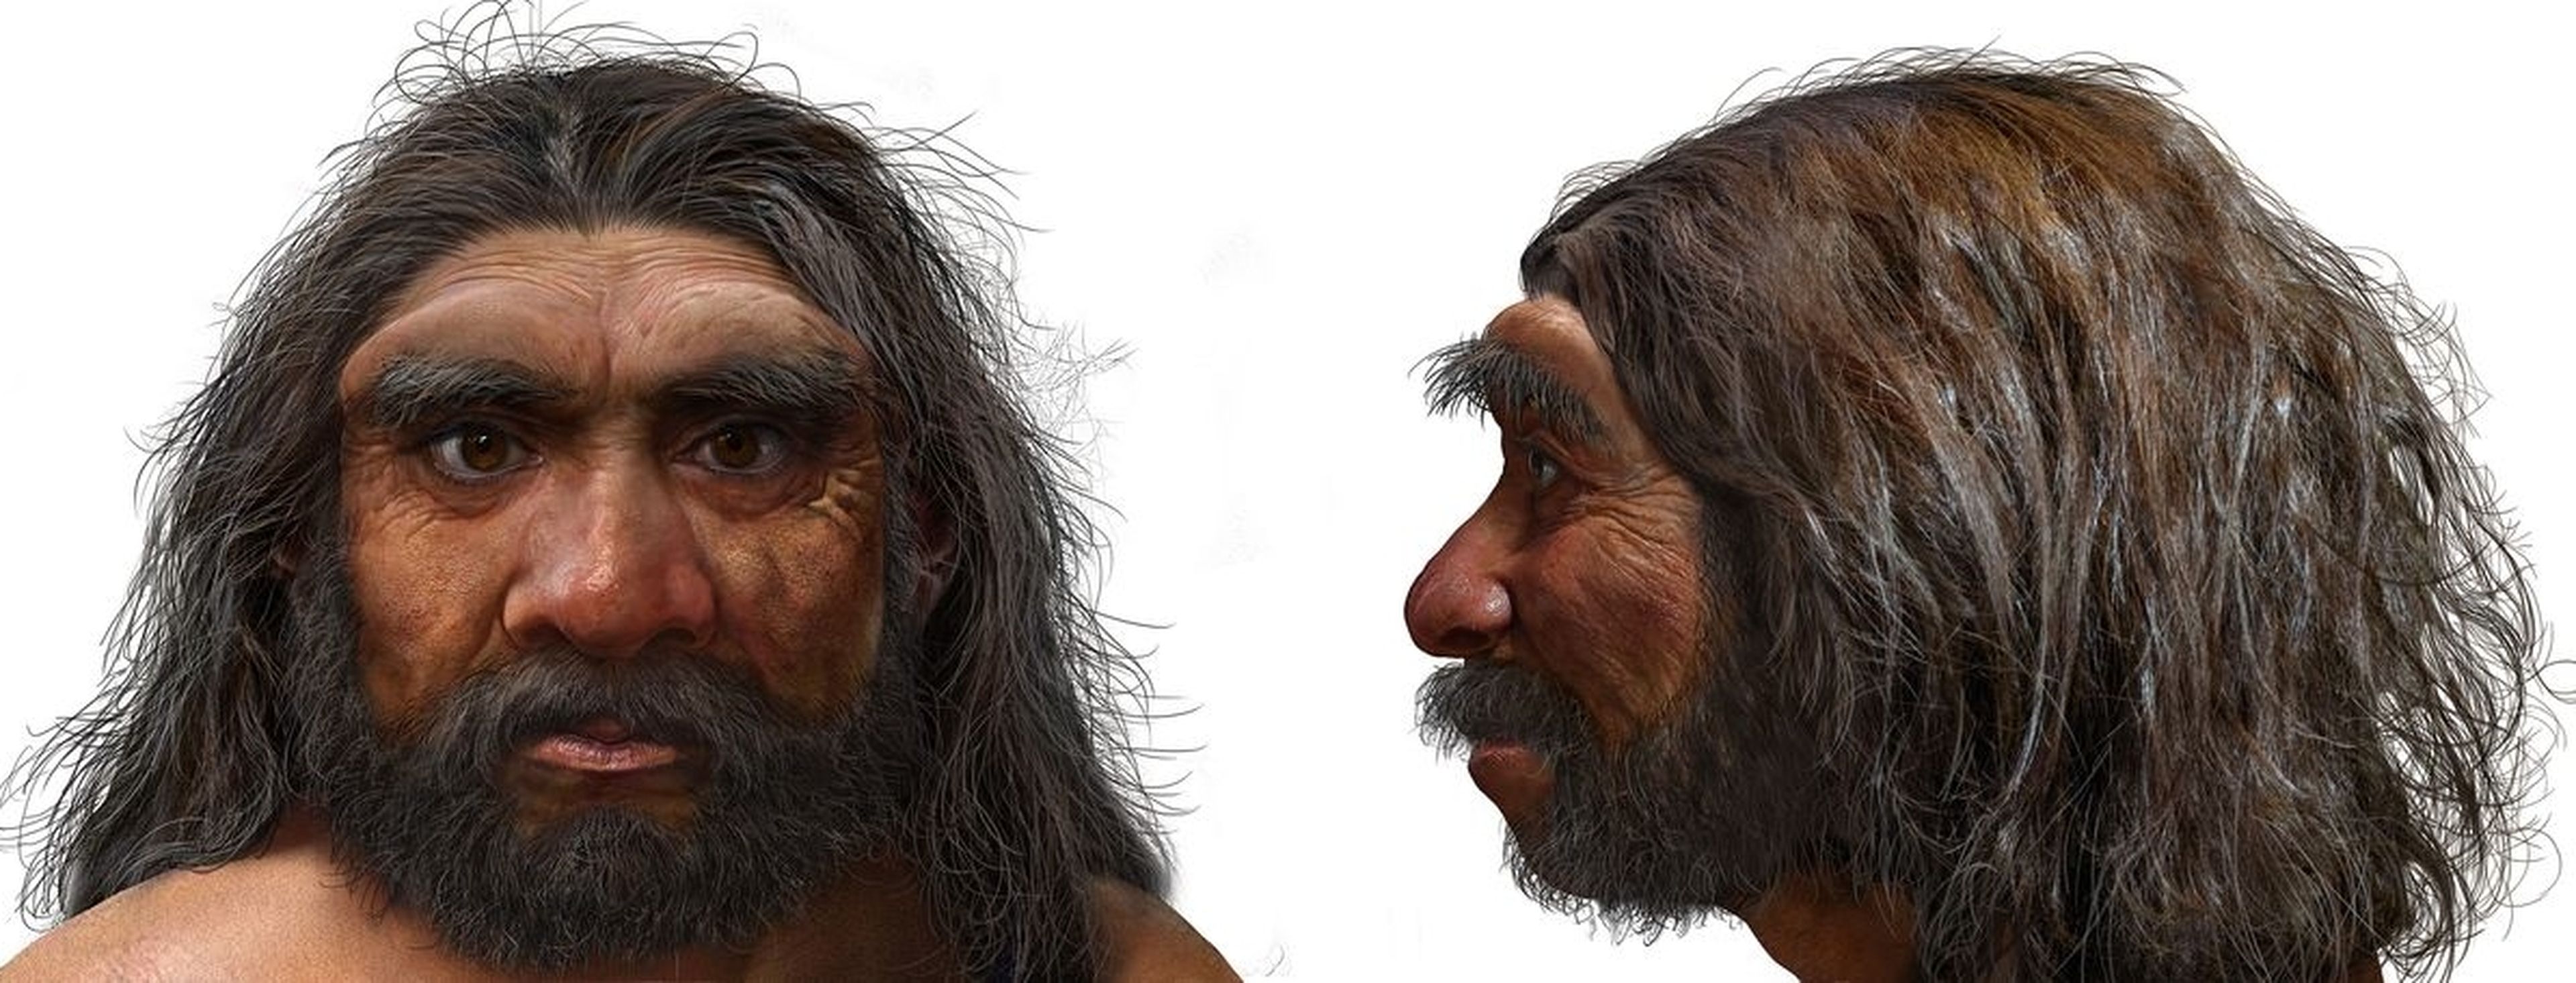 Descubierta una nueva especie humana: el Hombre Dragón, más cercano a nosotros que los neandertales